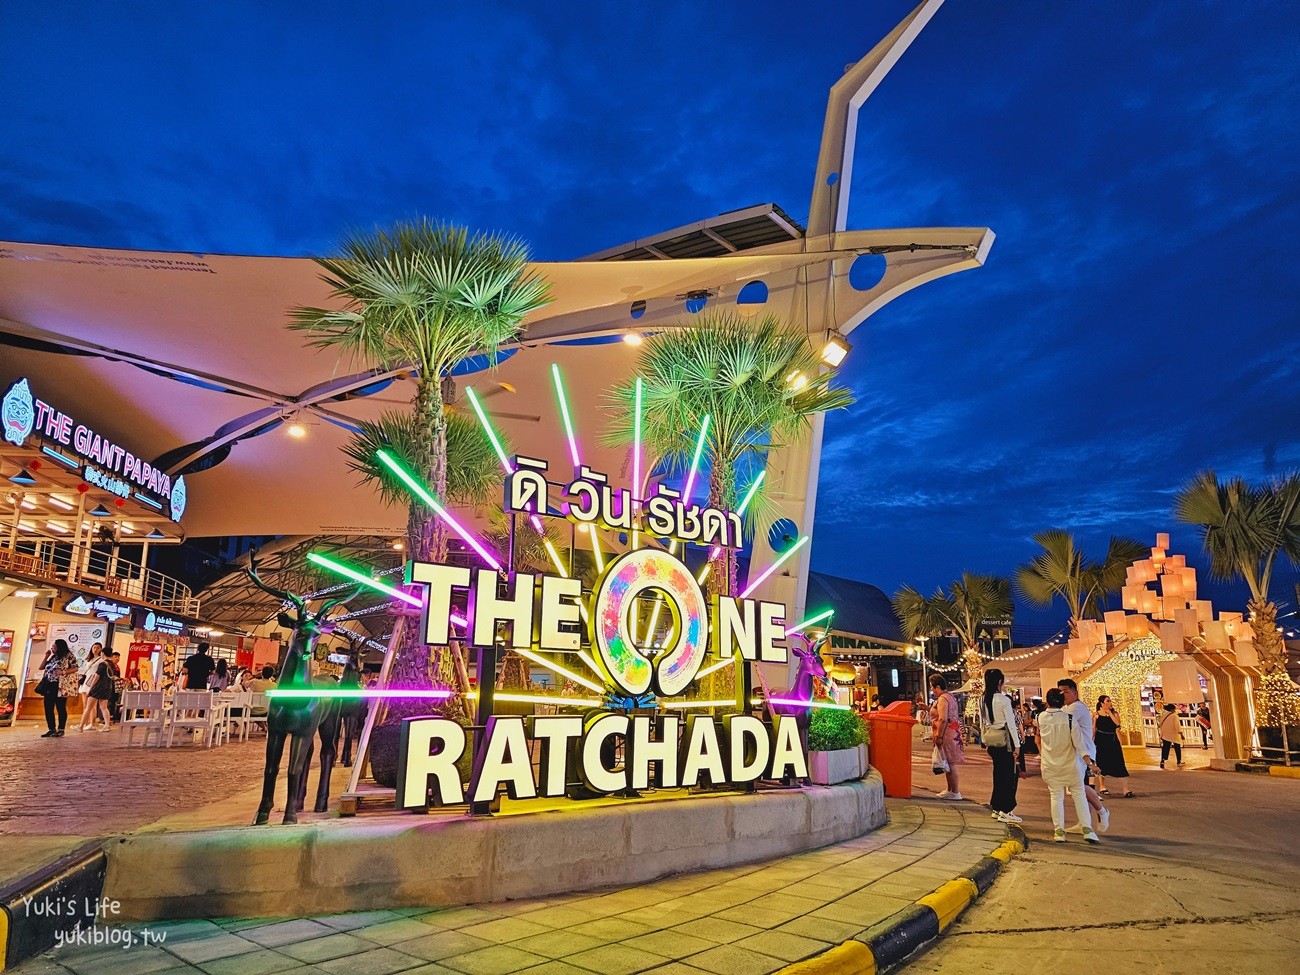 曼谷景點》The One Ratchada夜市(曼谷拉差達火車夜市)晚上逛街吃美食好去處~ - yukiblog.tw